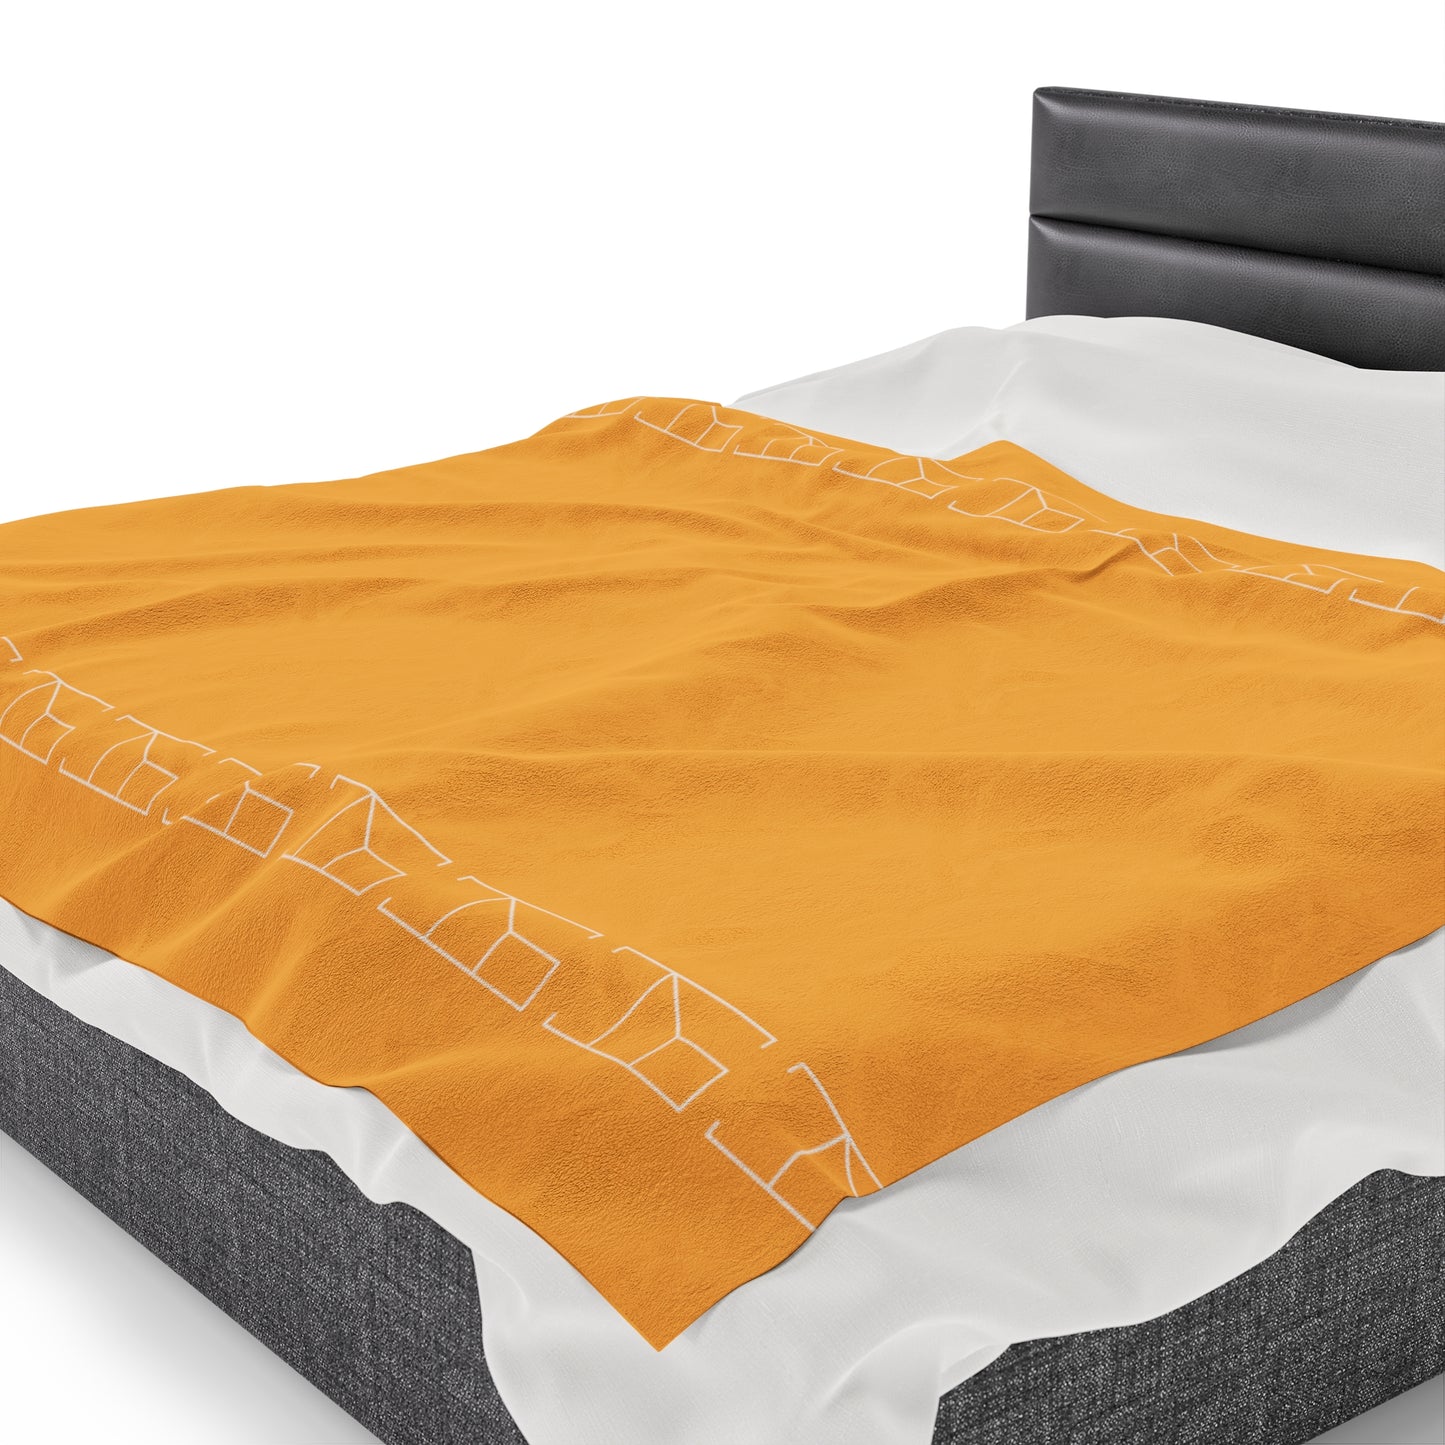 Velveteen Blanket - Hunyadi Orange